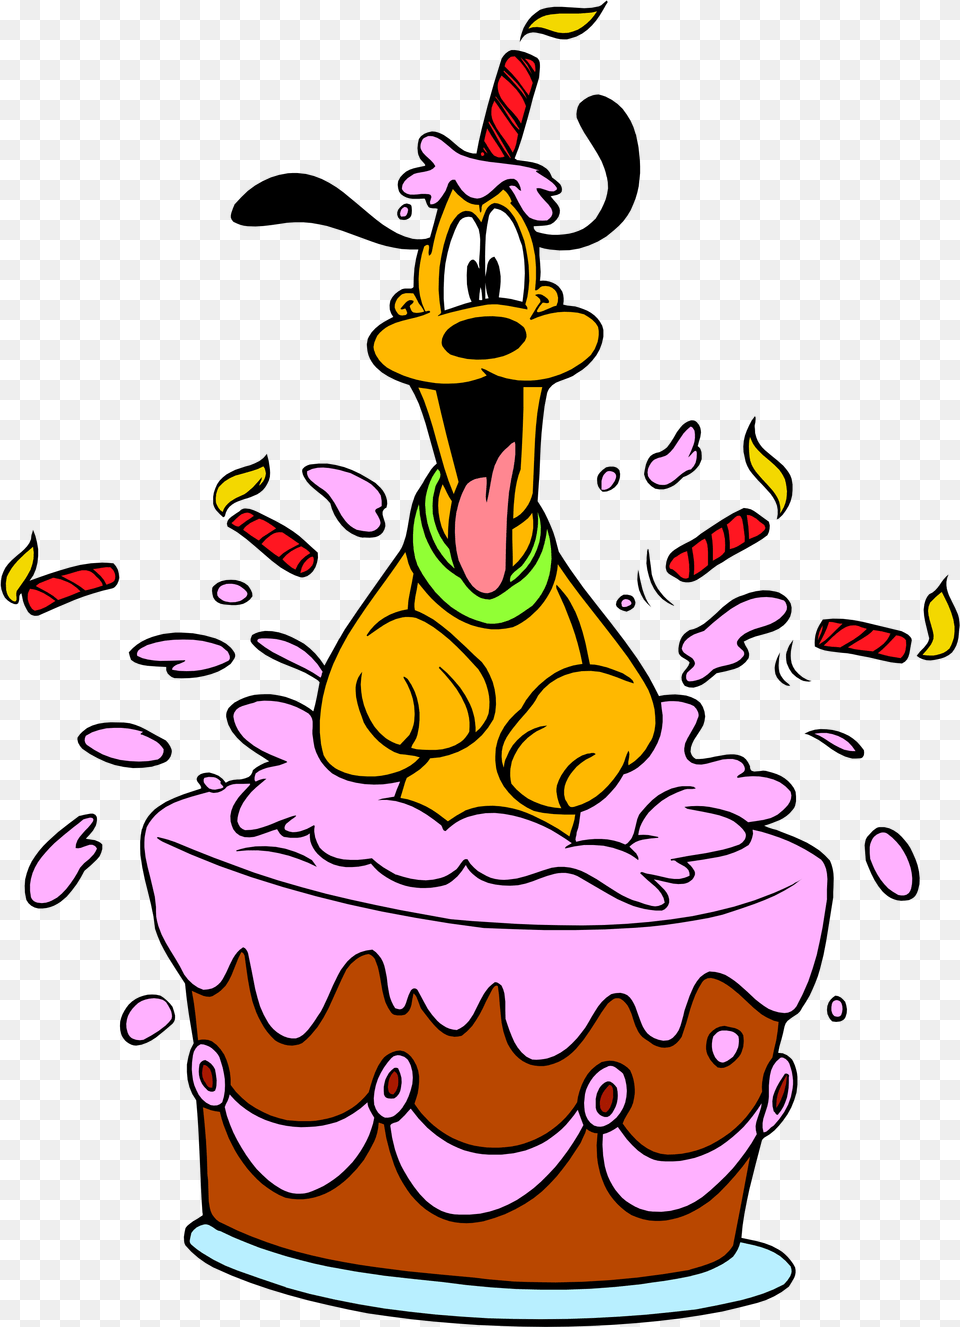 Happy Birthday Disney Pluto Happy Birthday Pluto Disney, Birthday Cake, Cake, Cream, Dessert Png Image